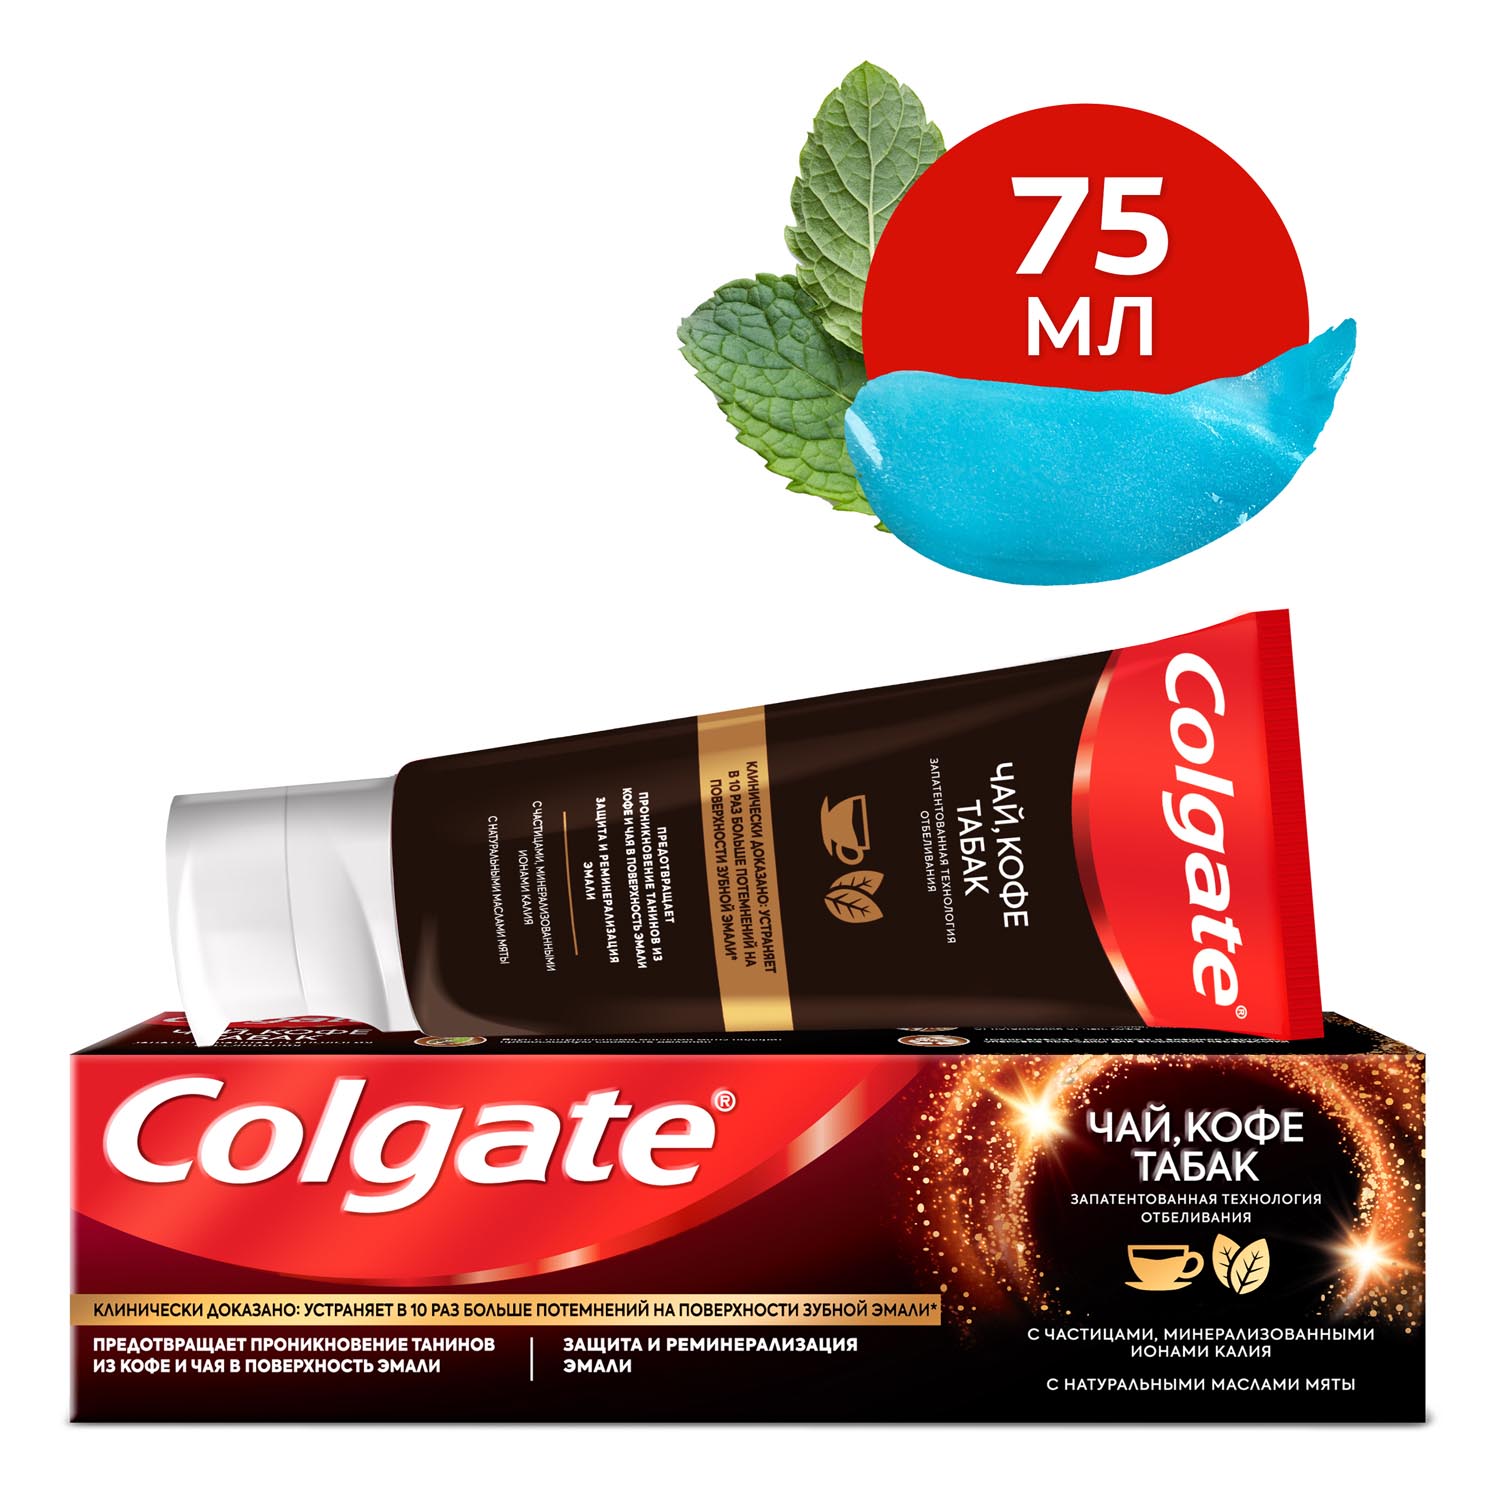 Зубная паста Colgate чай, кофе, табак отбеливающая с натуральными маслами мяты, 75 мл зубная паста colgate прополис отбеливающая 100 мл